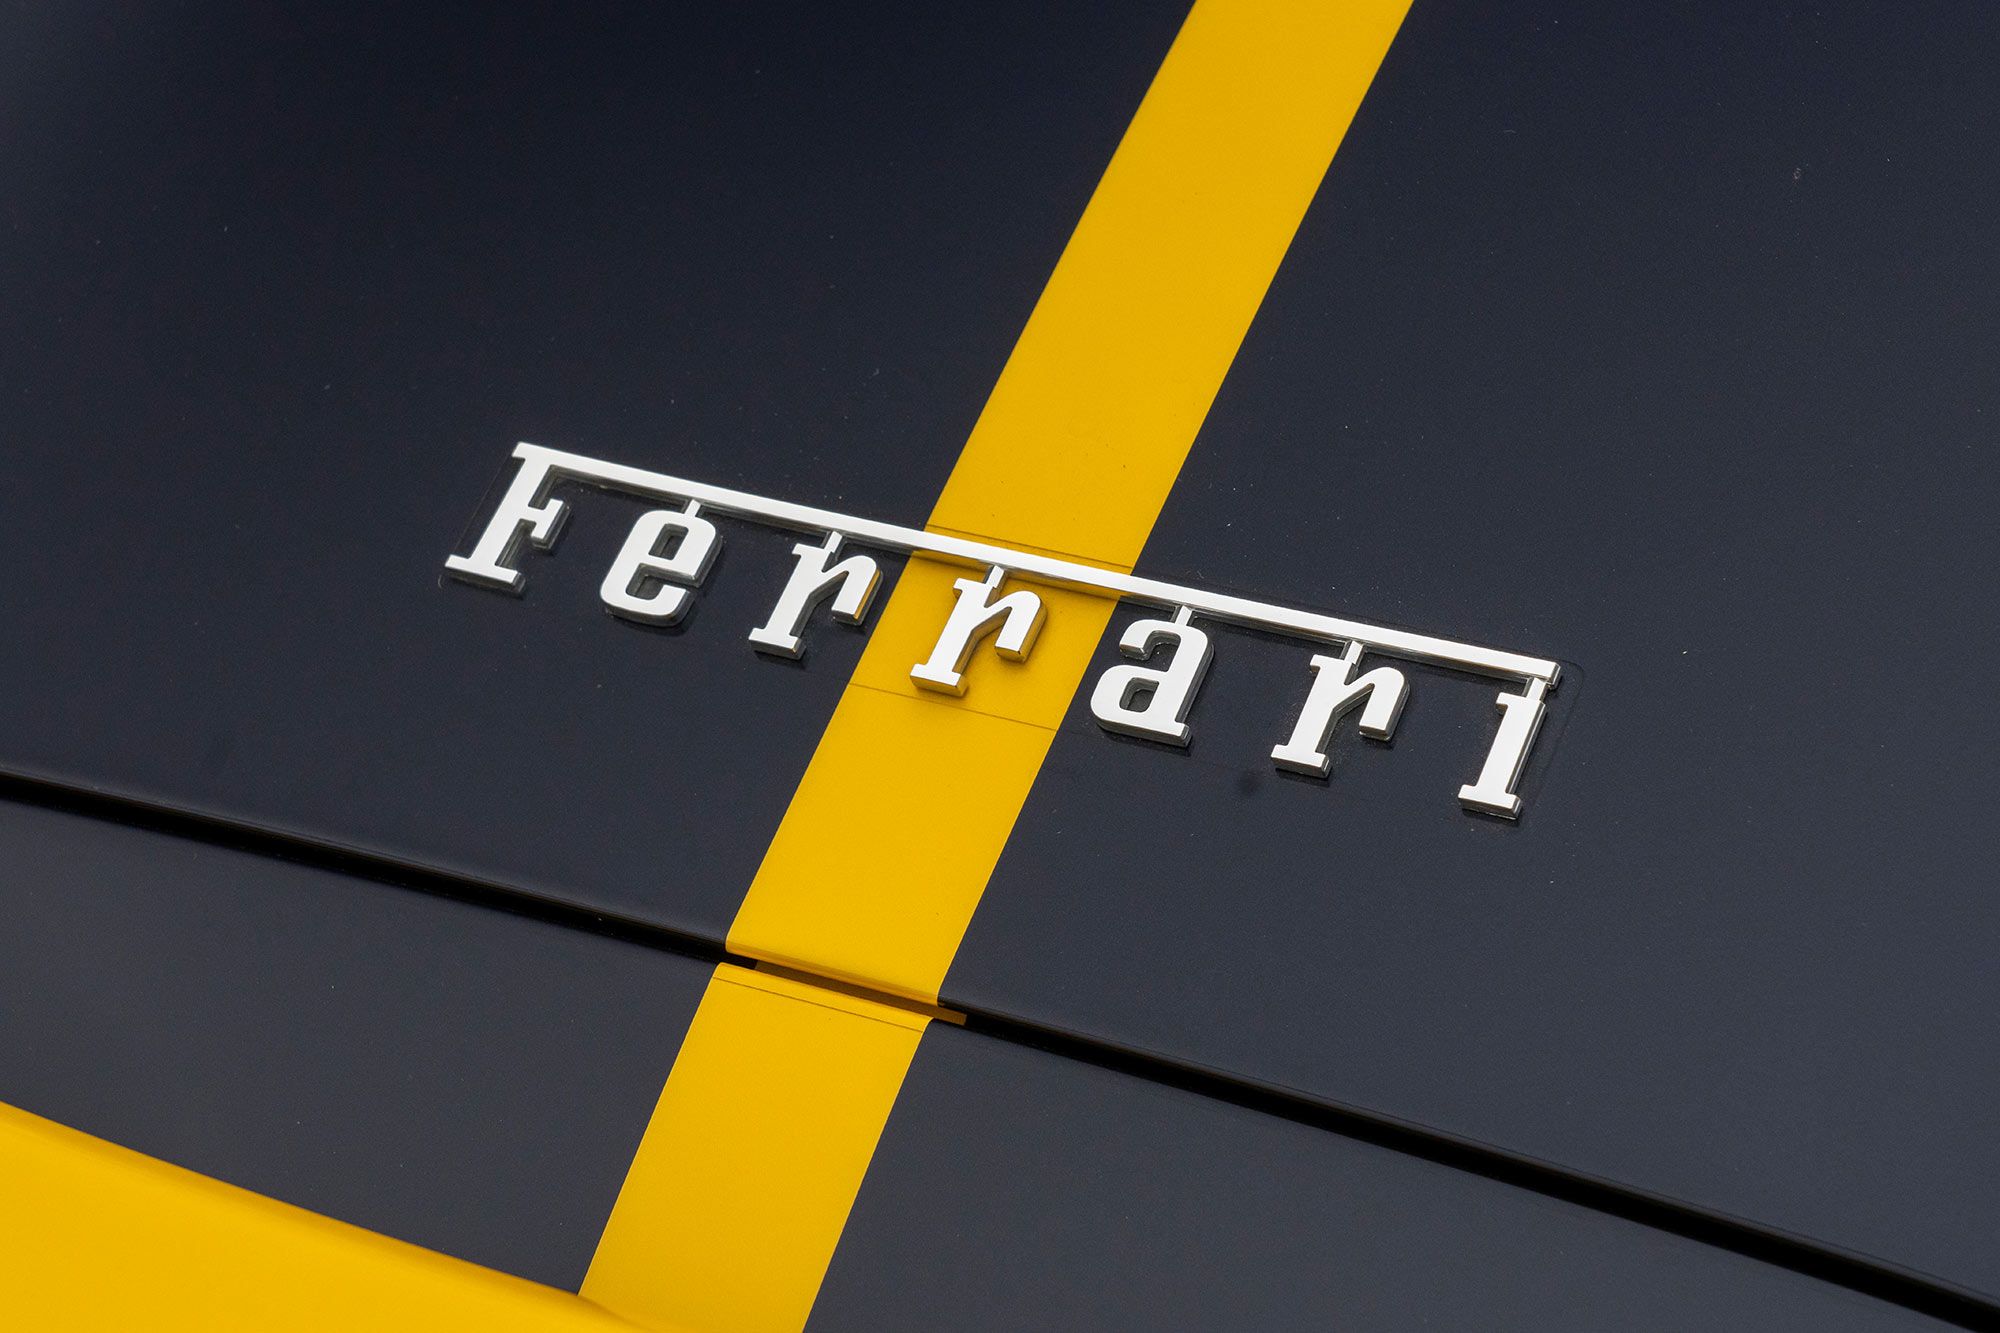 Ferrari 488 Pista Spyder